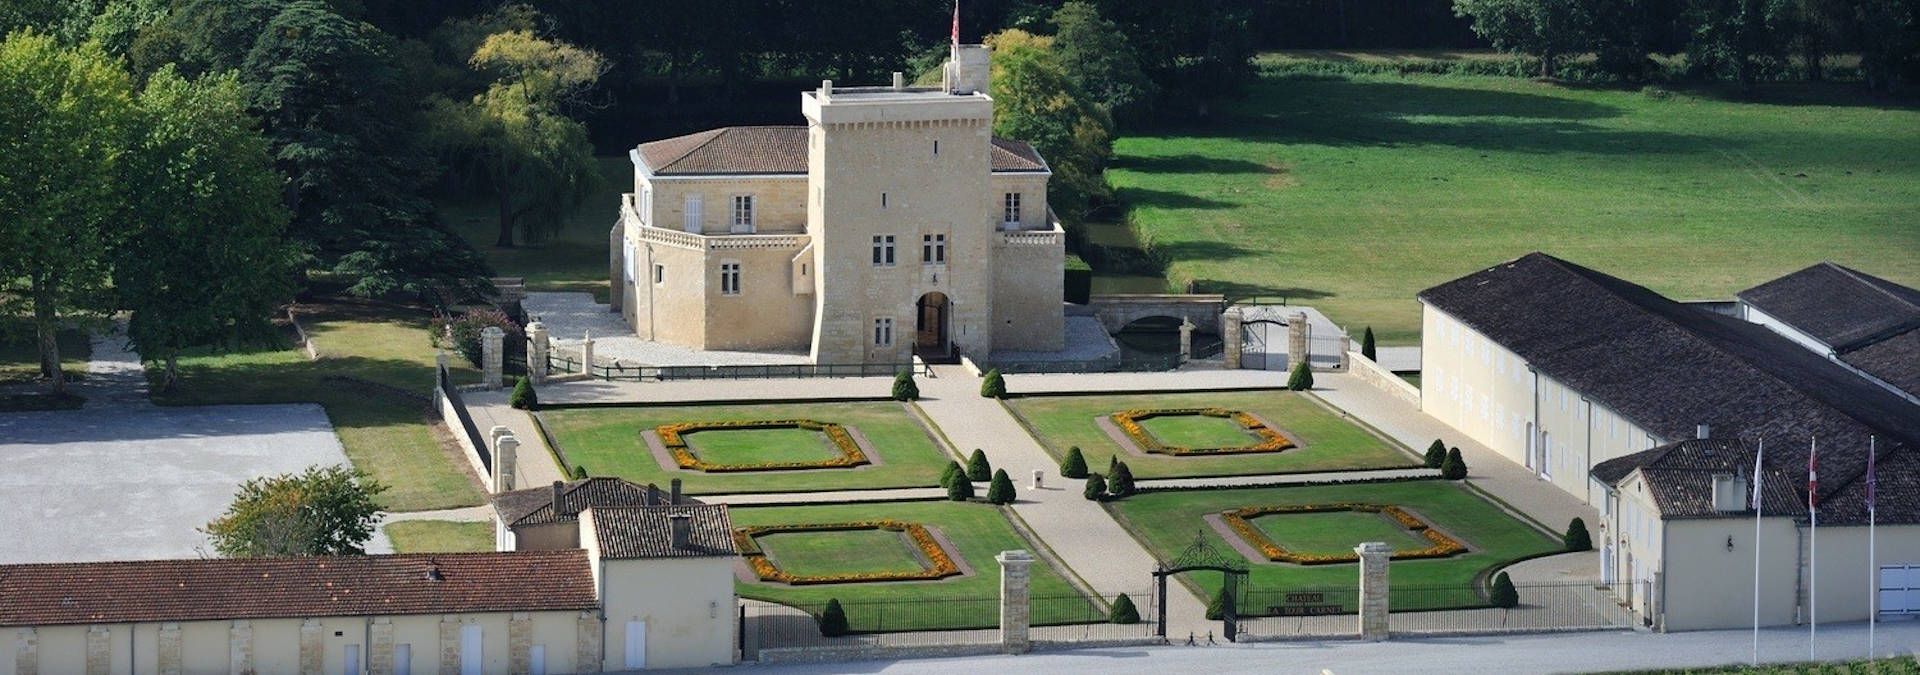 Château La Tour Carnet - Rue des Vignerons